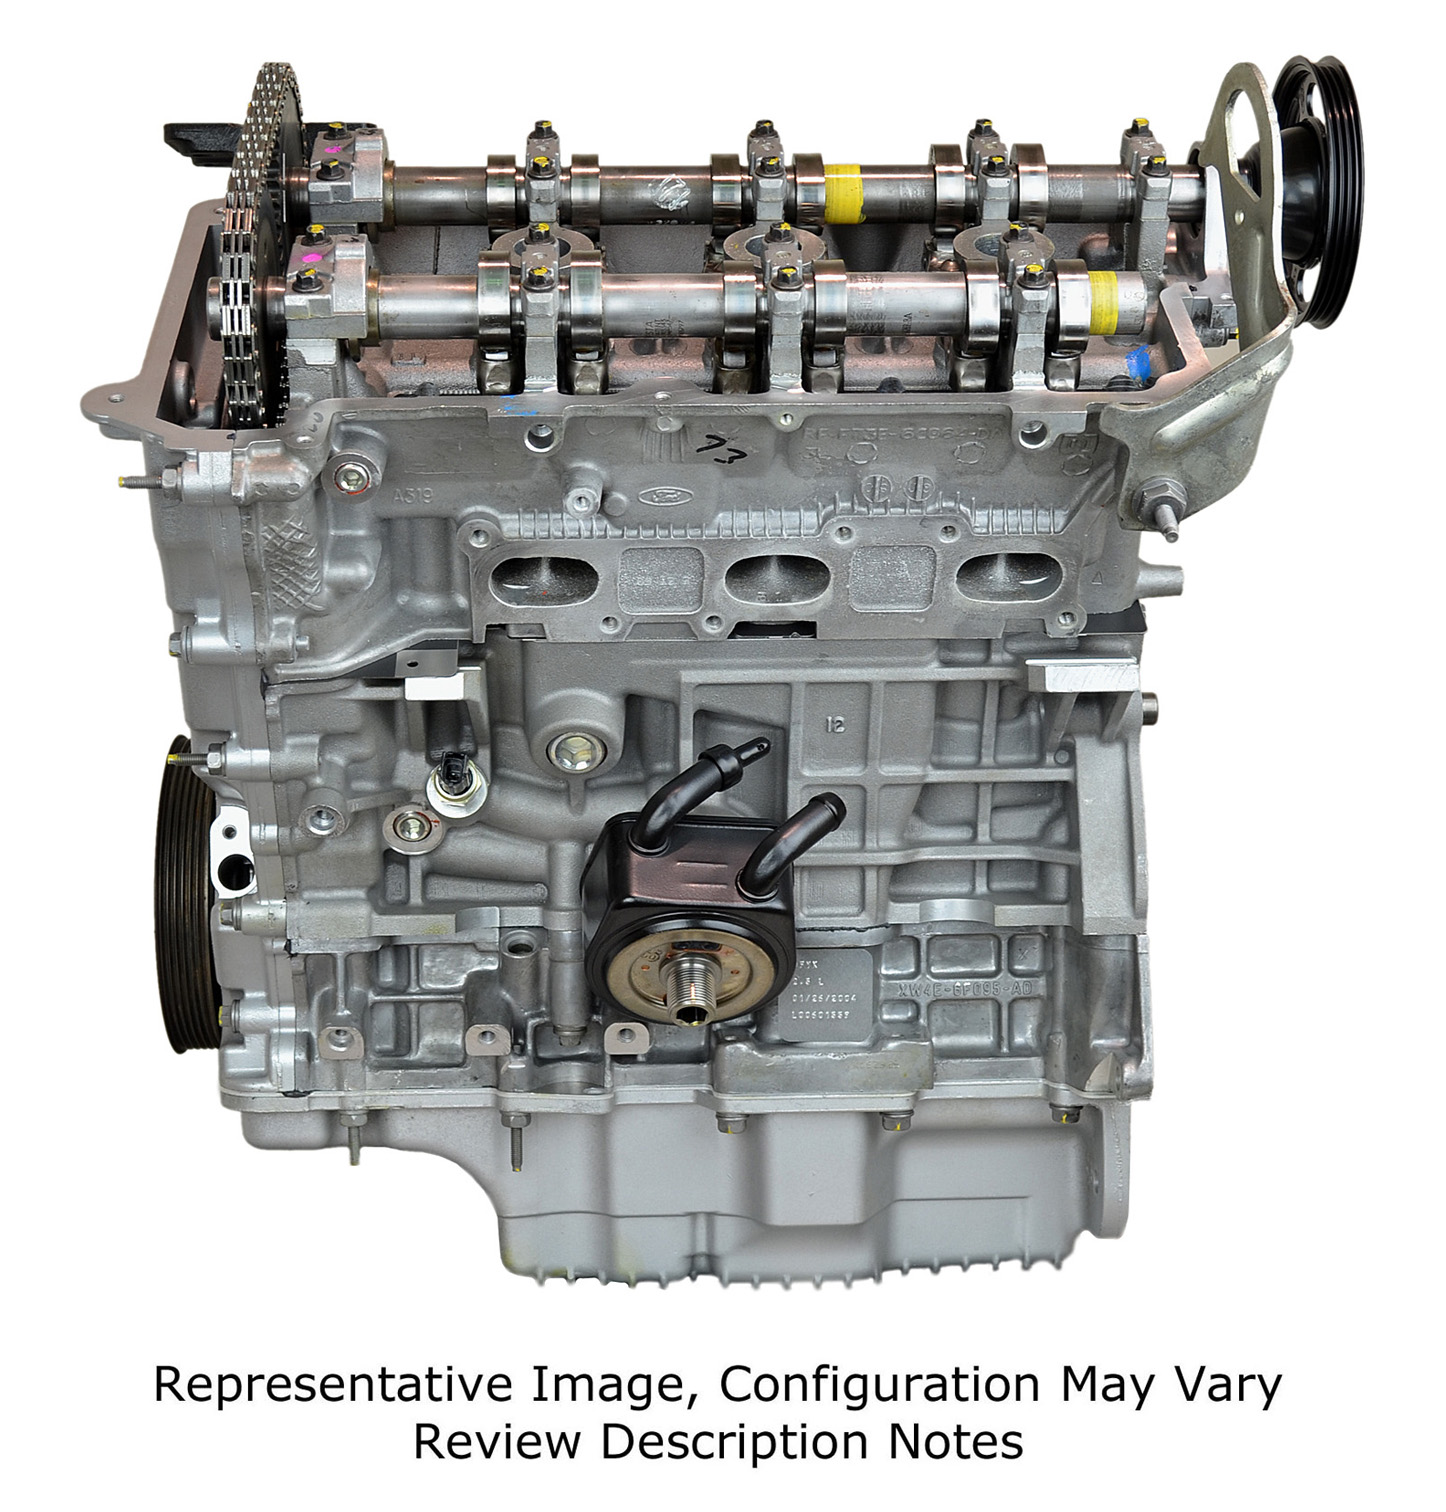 Ford SVT 2.5L V6 Remanufactured Engine - 2000